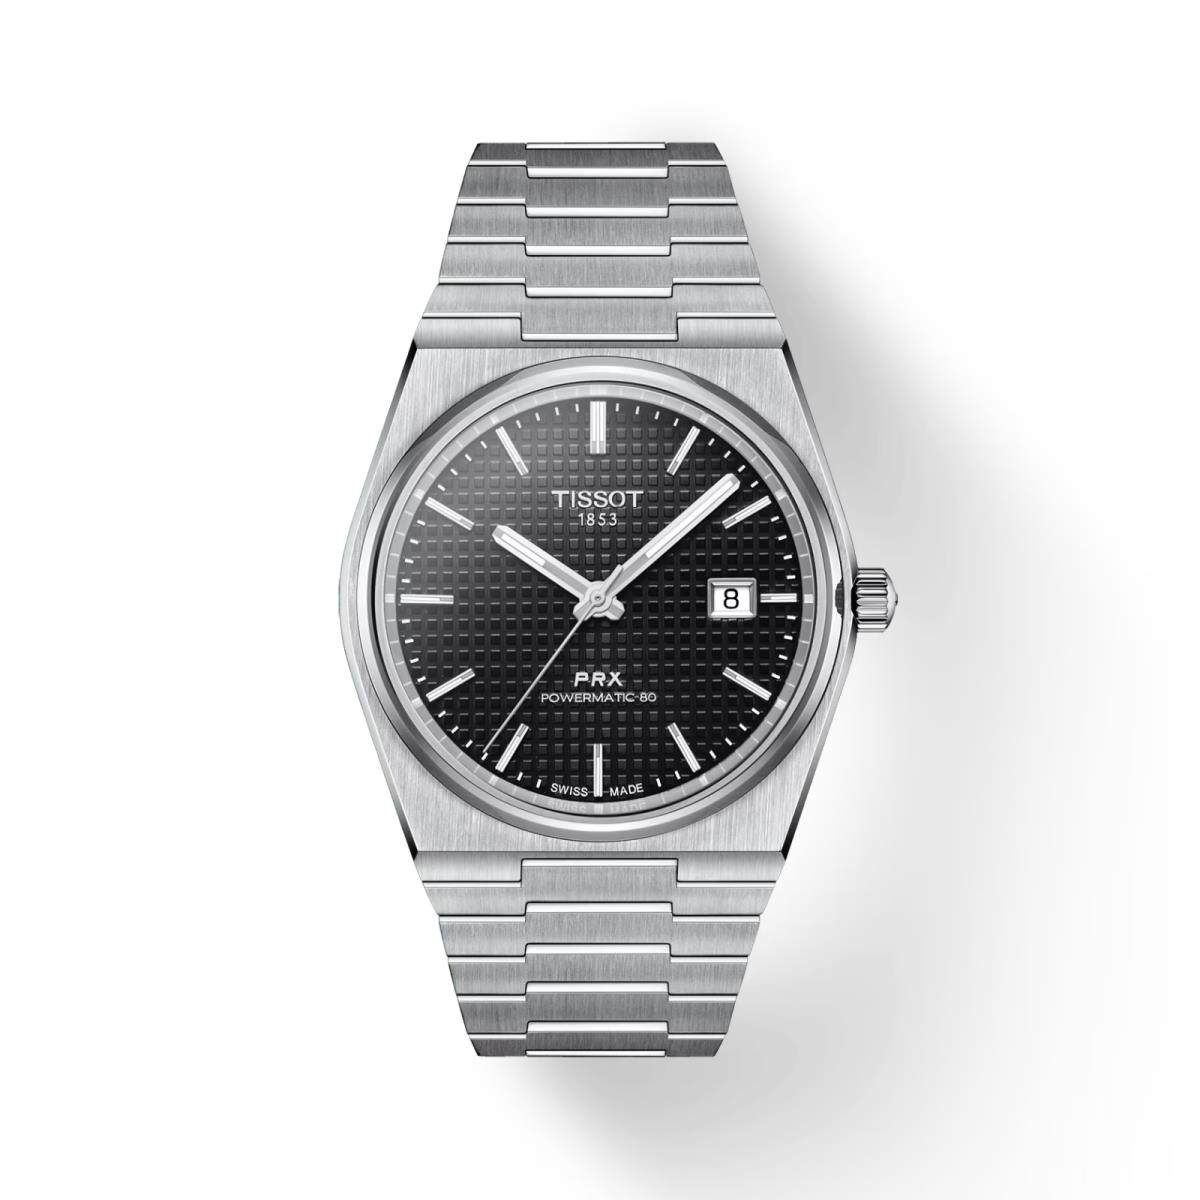 Tissot Prx Powermatic 80 Men`s Black Dial Watch - T137.407.11.051.00 - Dial: Black, Band: Silver, Bezel: Silver